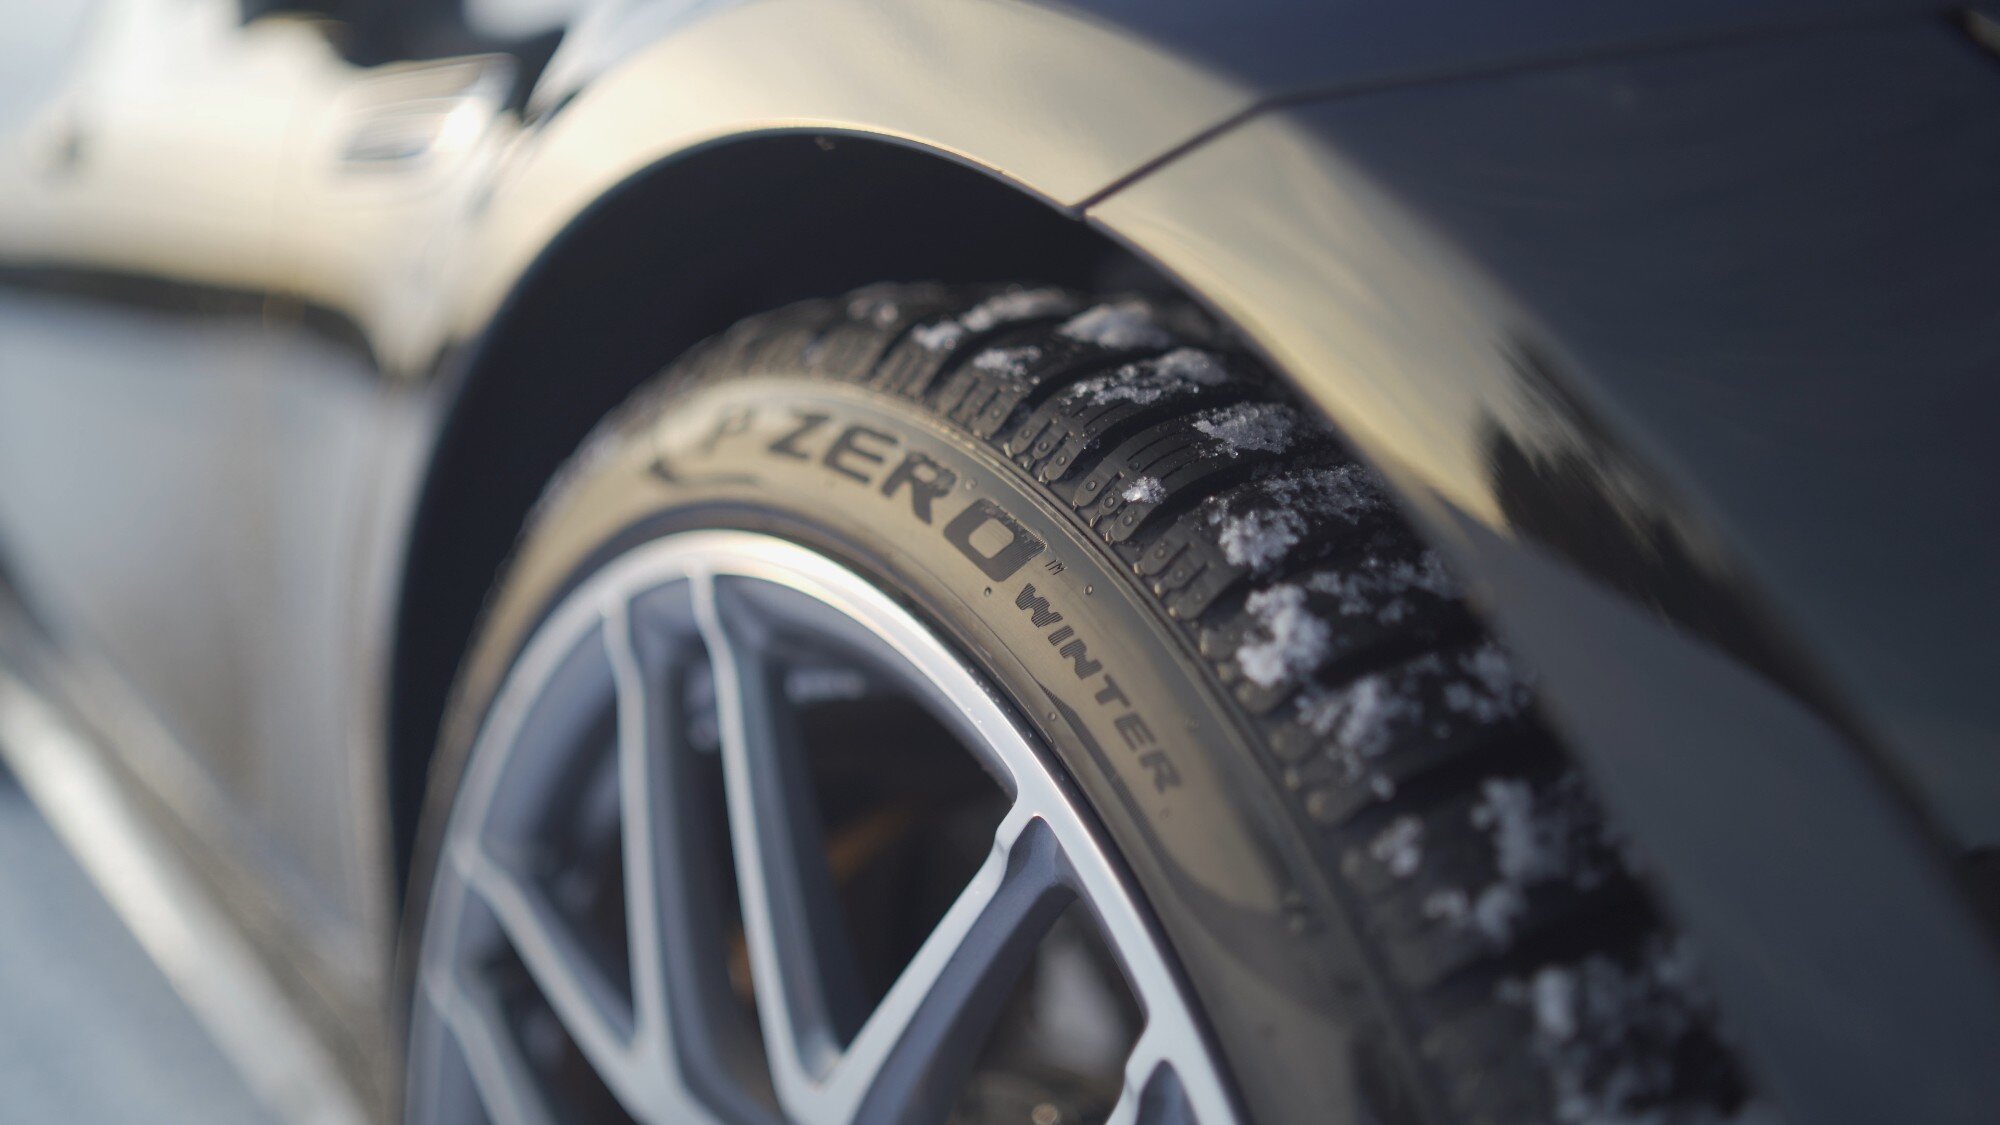 Τα 5G λάστιχα της Pirelli προειδοποιούν τα άλλα οχήματα για επικίνδυνες οδικές συνθήκες